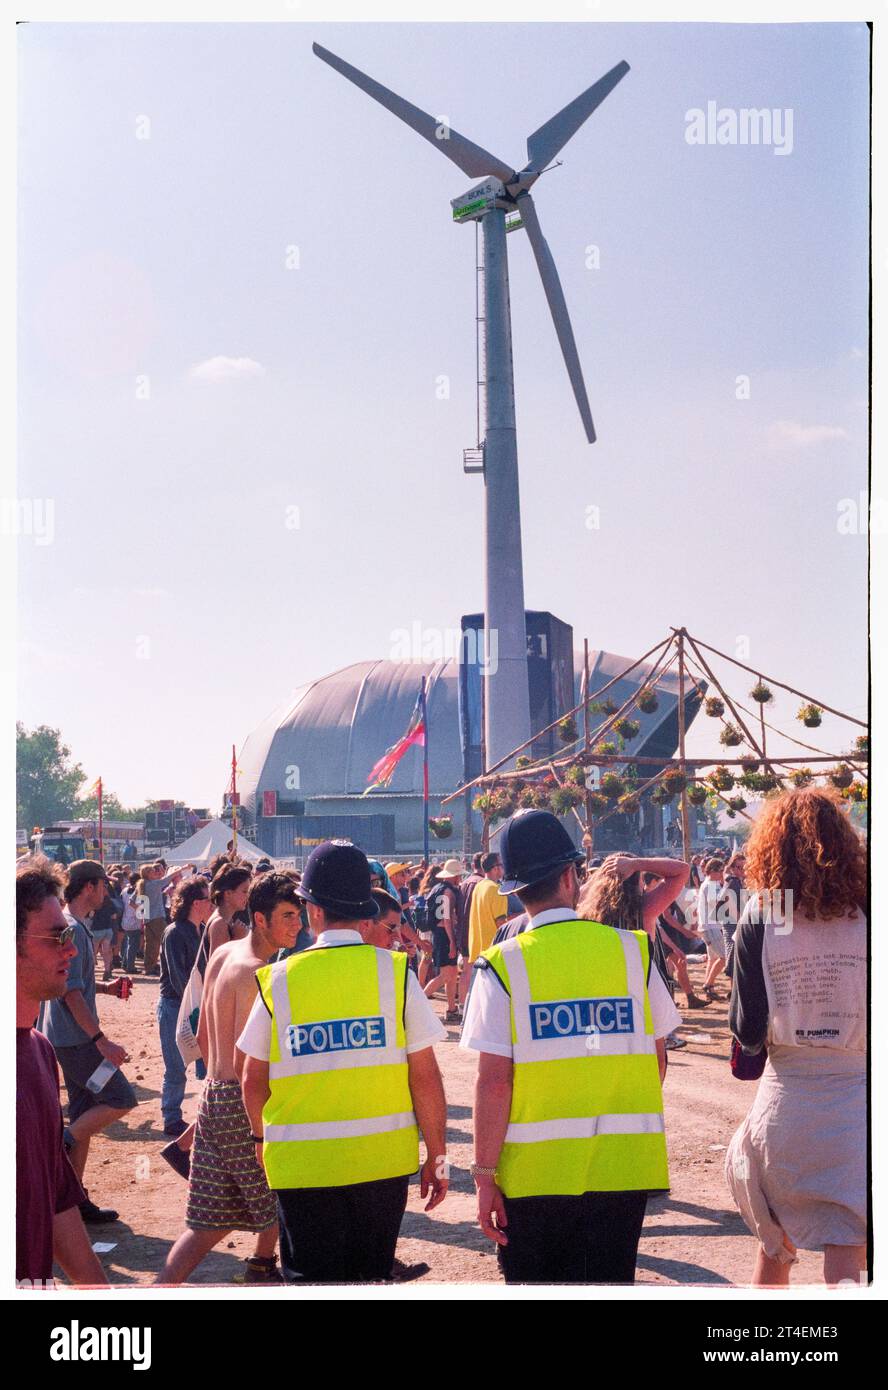 FESTIVAL DE GLASTONBURY, 1995 : policiers en patrouille parmi les festivaliers dans le champ principal au Festival de Glastonbury, Pilton Farm, Somerset, Angleterre, 24 juin 1995. En 1995, le festival a célébré son 25e anniversaire. Il n'y avait pas de stade pyramidal cette année-là car il avait brûlé. Photo : ROB WATKINS Banque D'Images